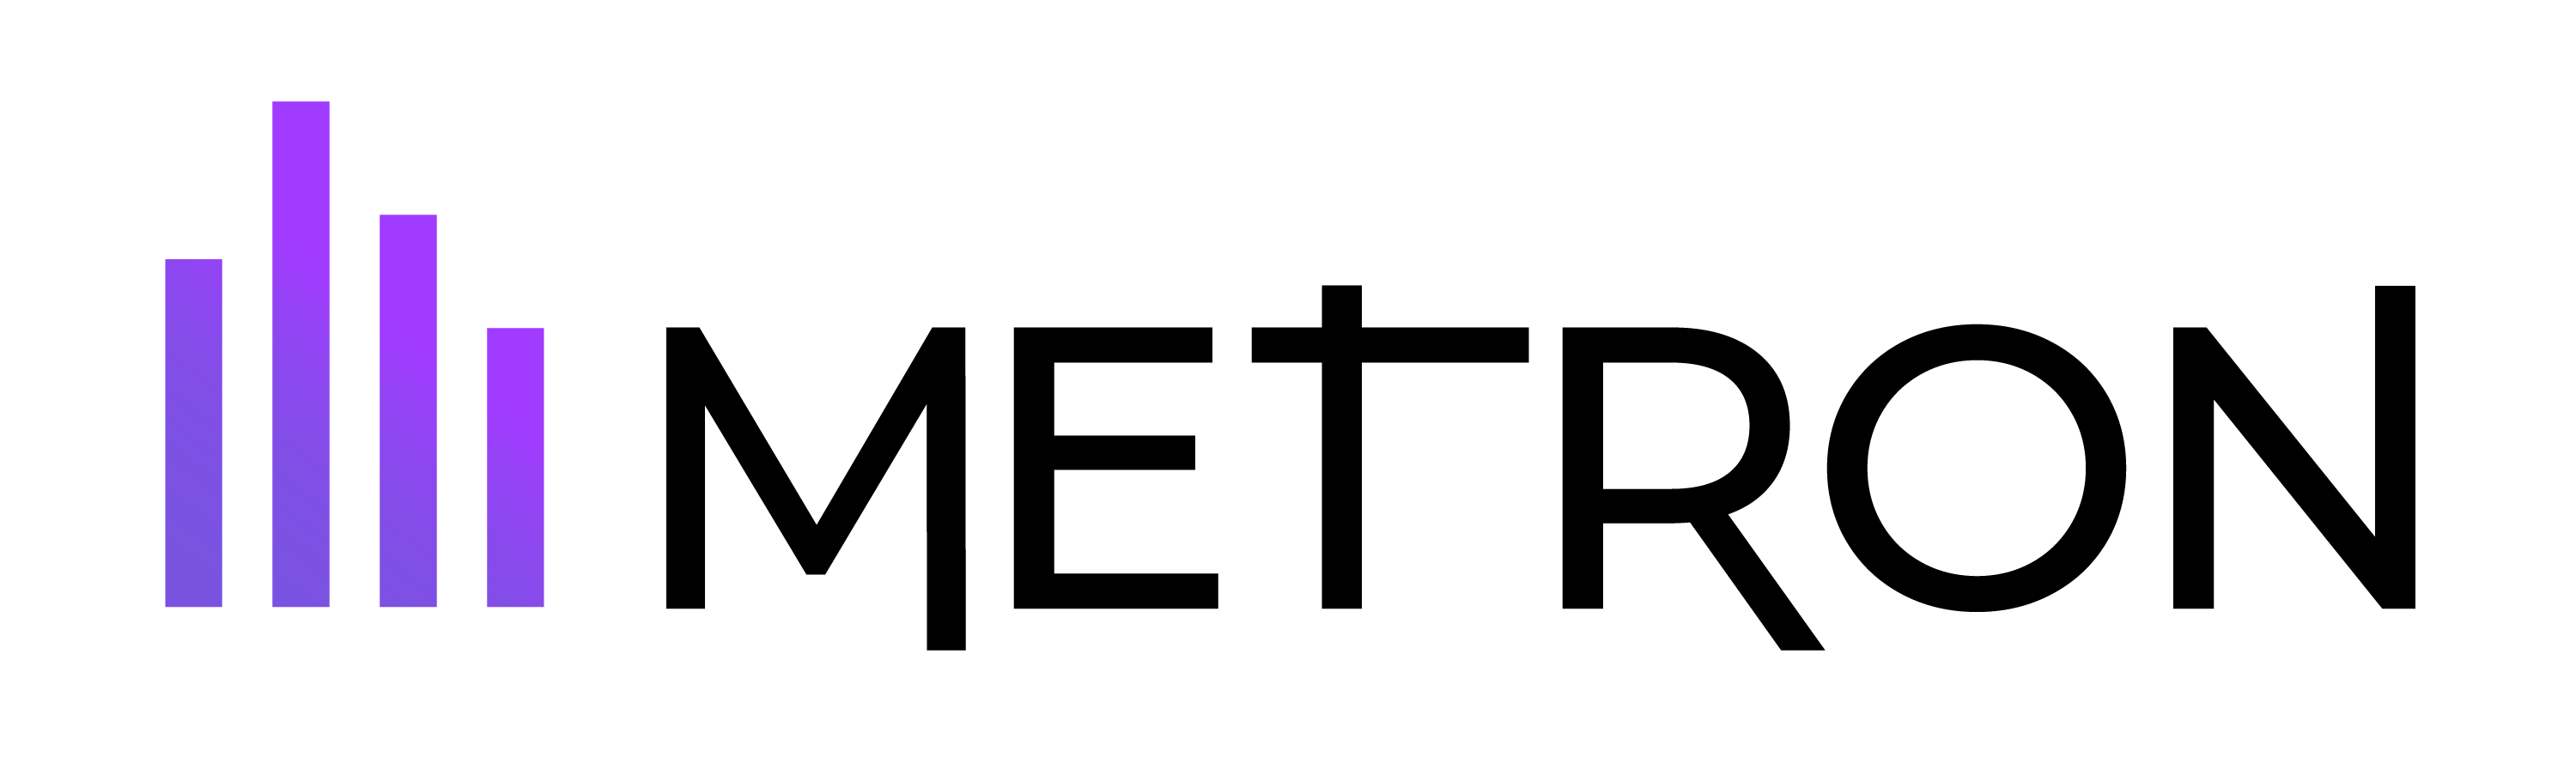 Metron-logo-1